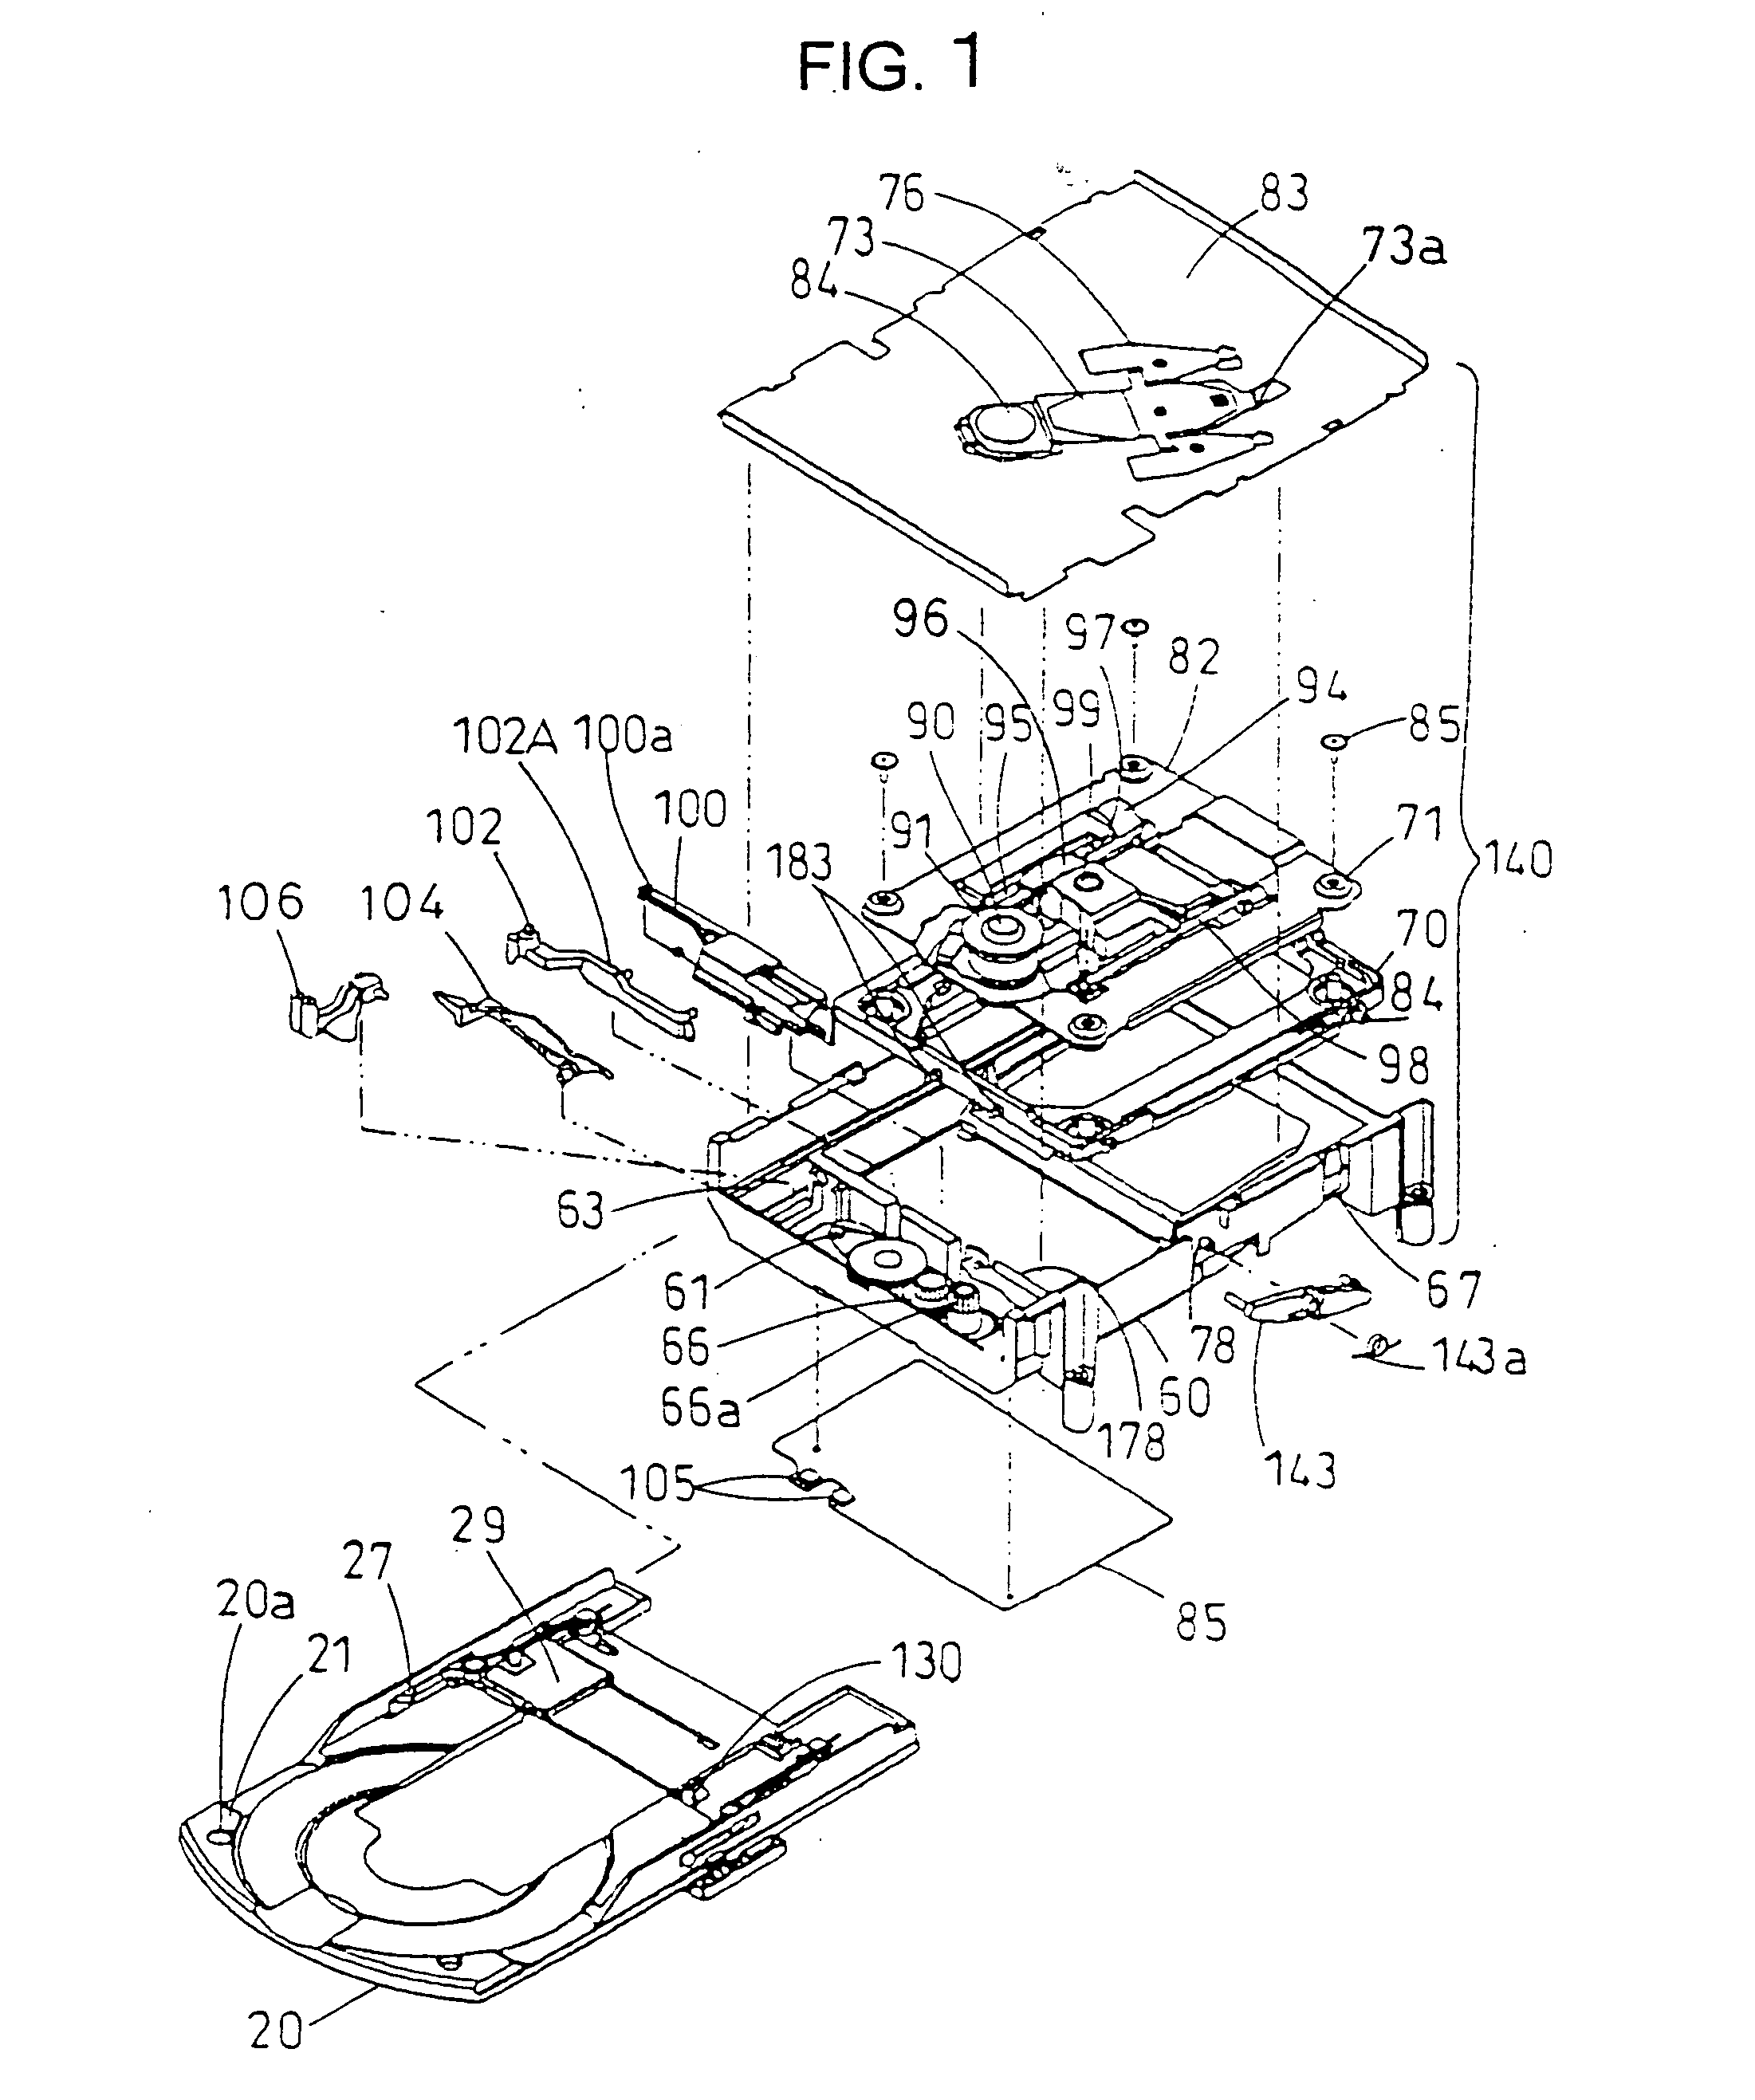 Disk apparatus